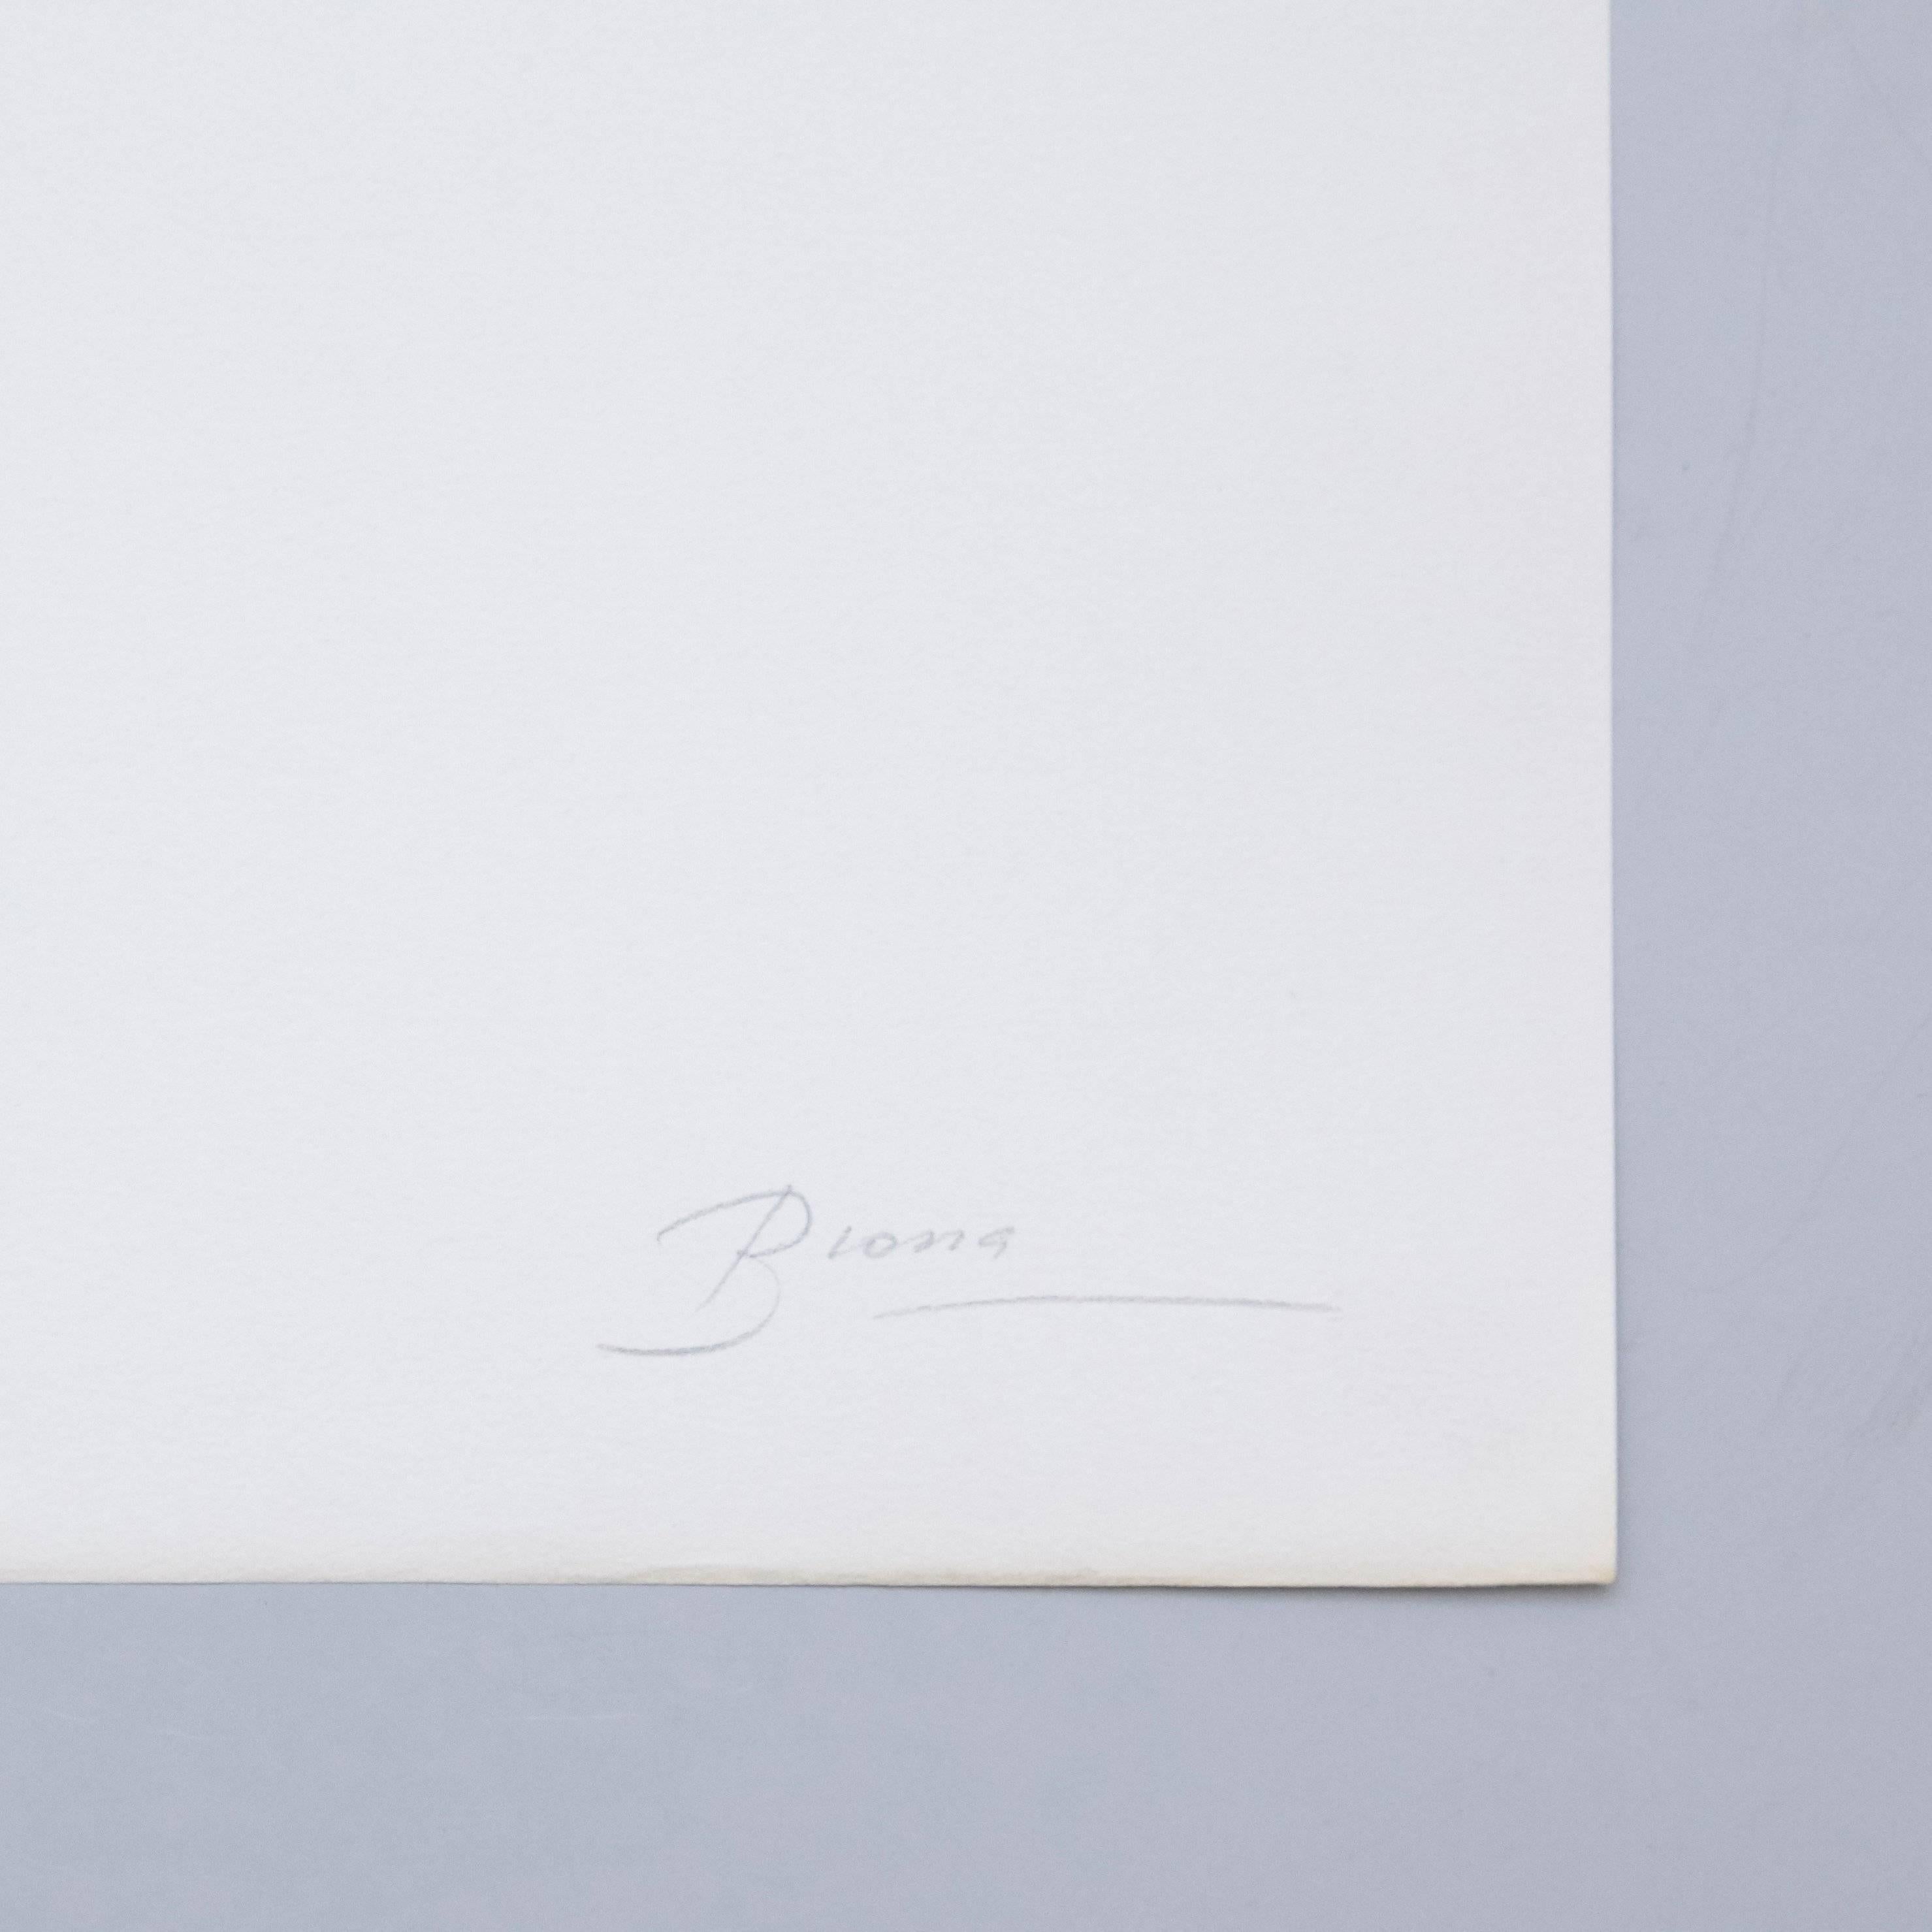 Visuelles Gedicht von Joan Brossa, um 1989.

Grafischer Druck. Lithographie auf Guarro-Papier. Limitierte Auflage (77). Signiert und nummeriert. Jahr: 1989

Maße: Breite 38 cm (15 Zoll)
Höhe 50 cm (20 in)

Joan Brossa, Barcelona, Spanien,